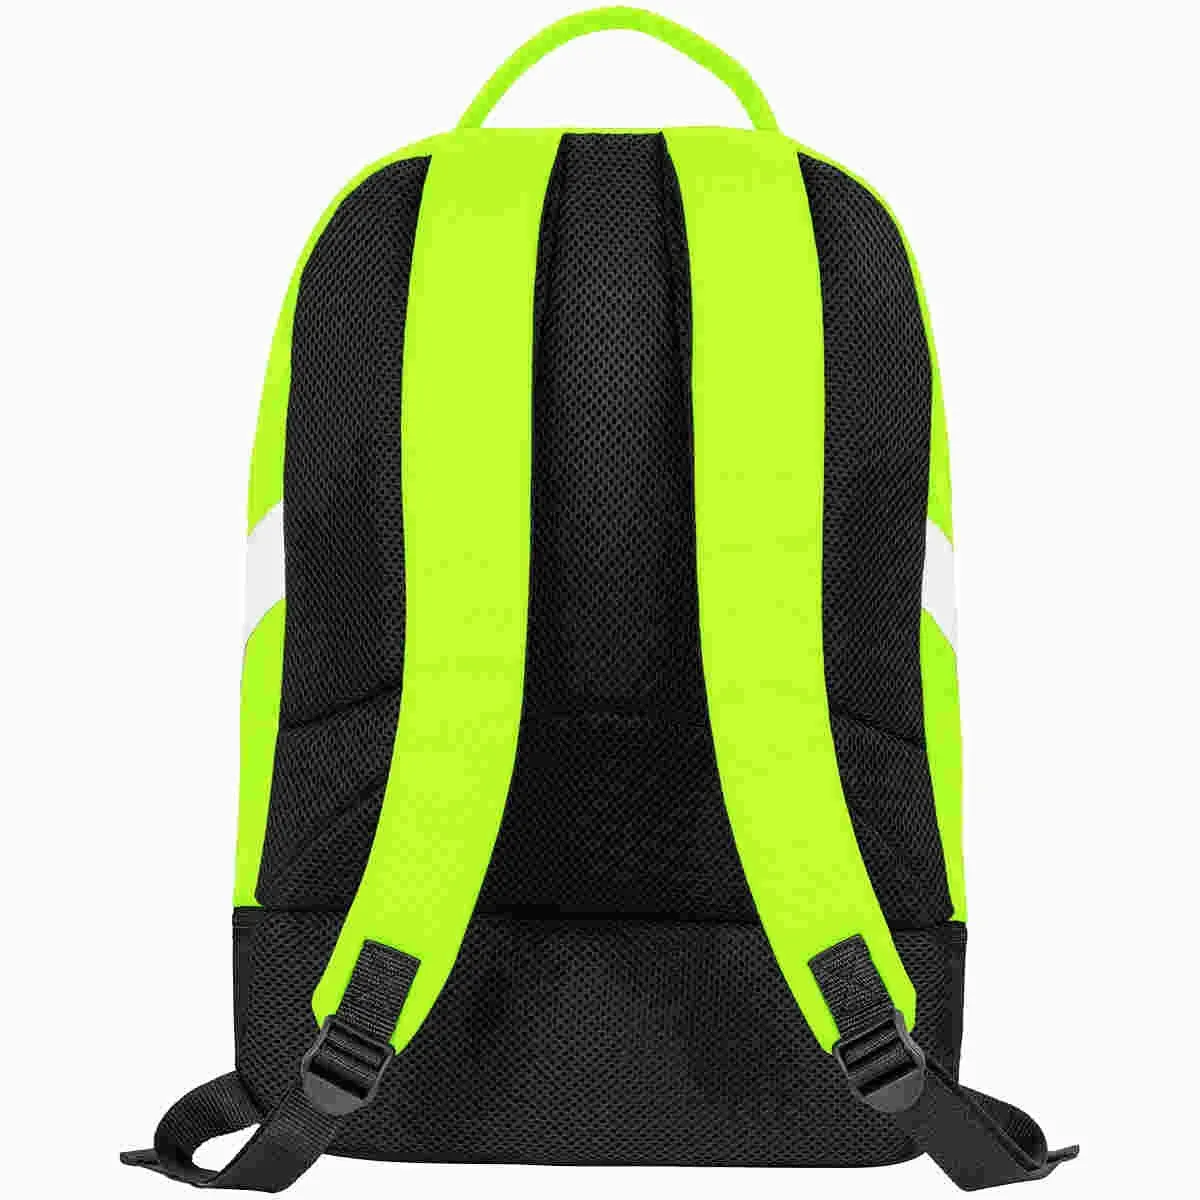 Jako backpack Iconic neon green/black